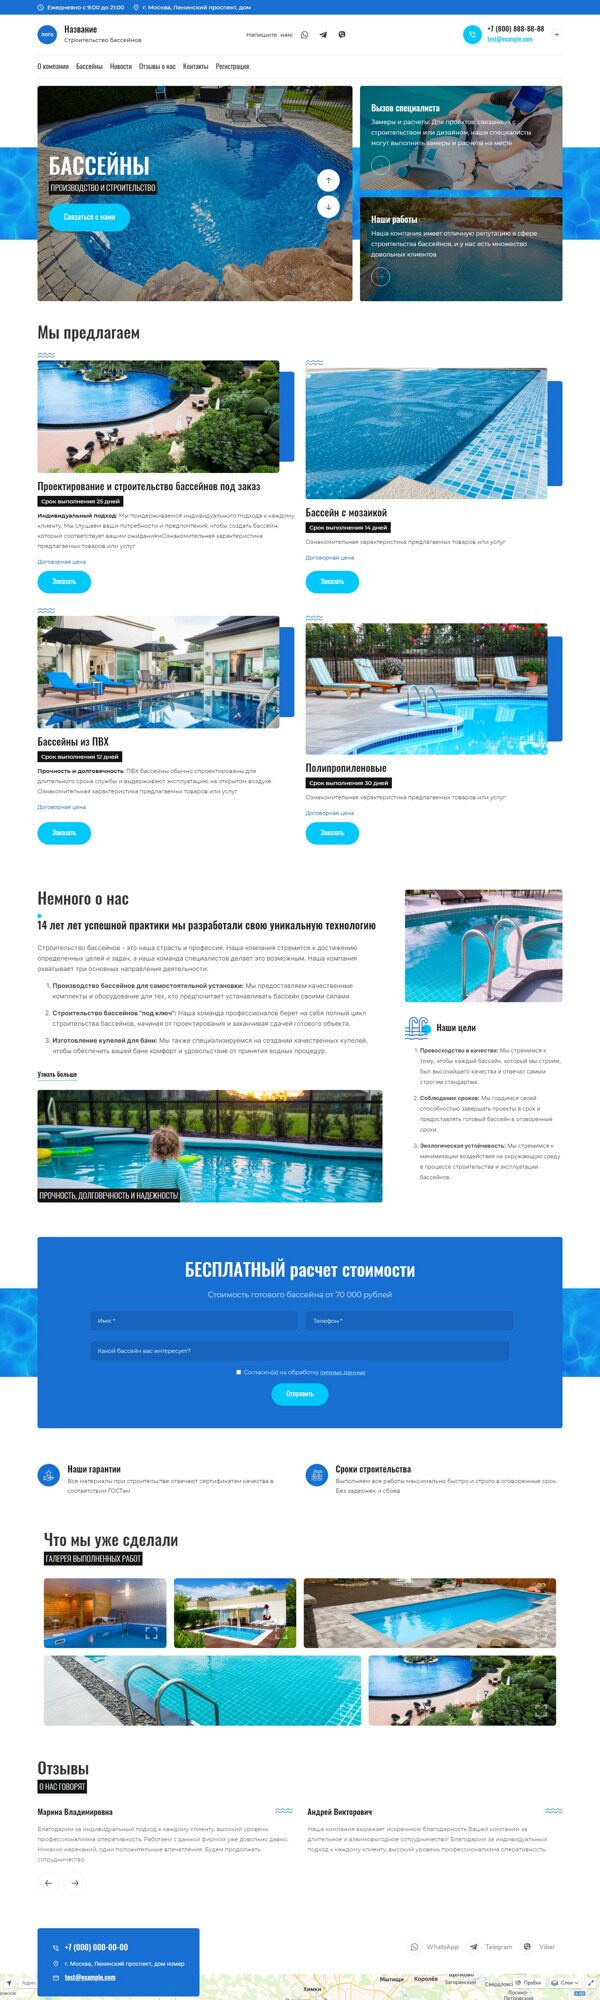 Готовый Сайт-Бизнес № 5319417 - Строительство бассейнов и аквапарков (Десктопная версия)